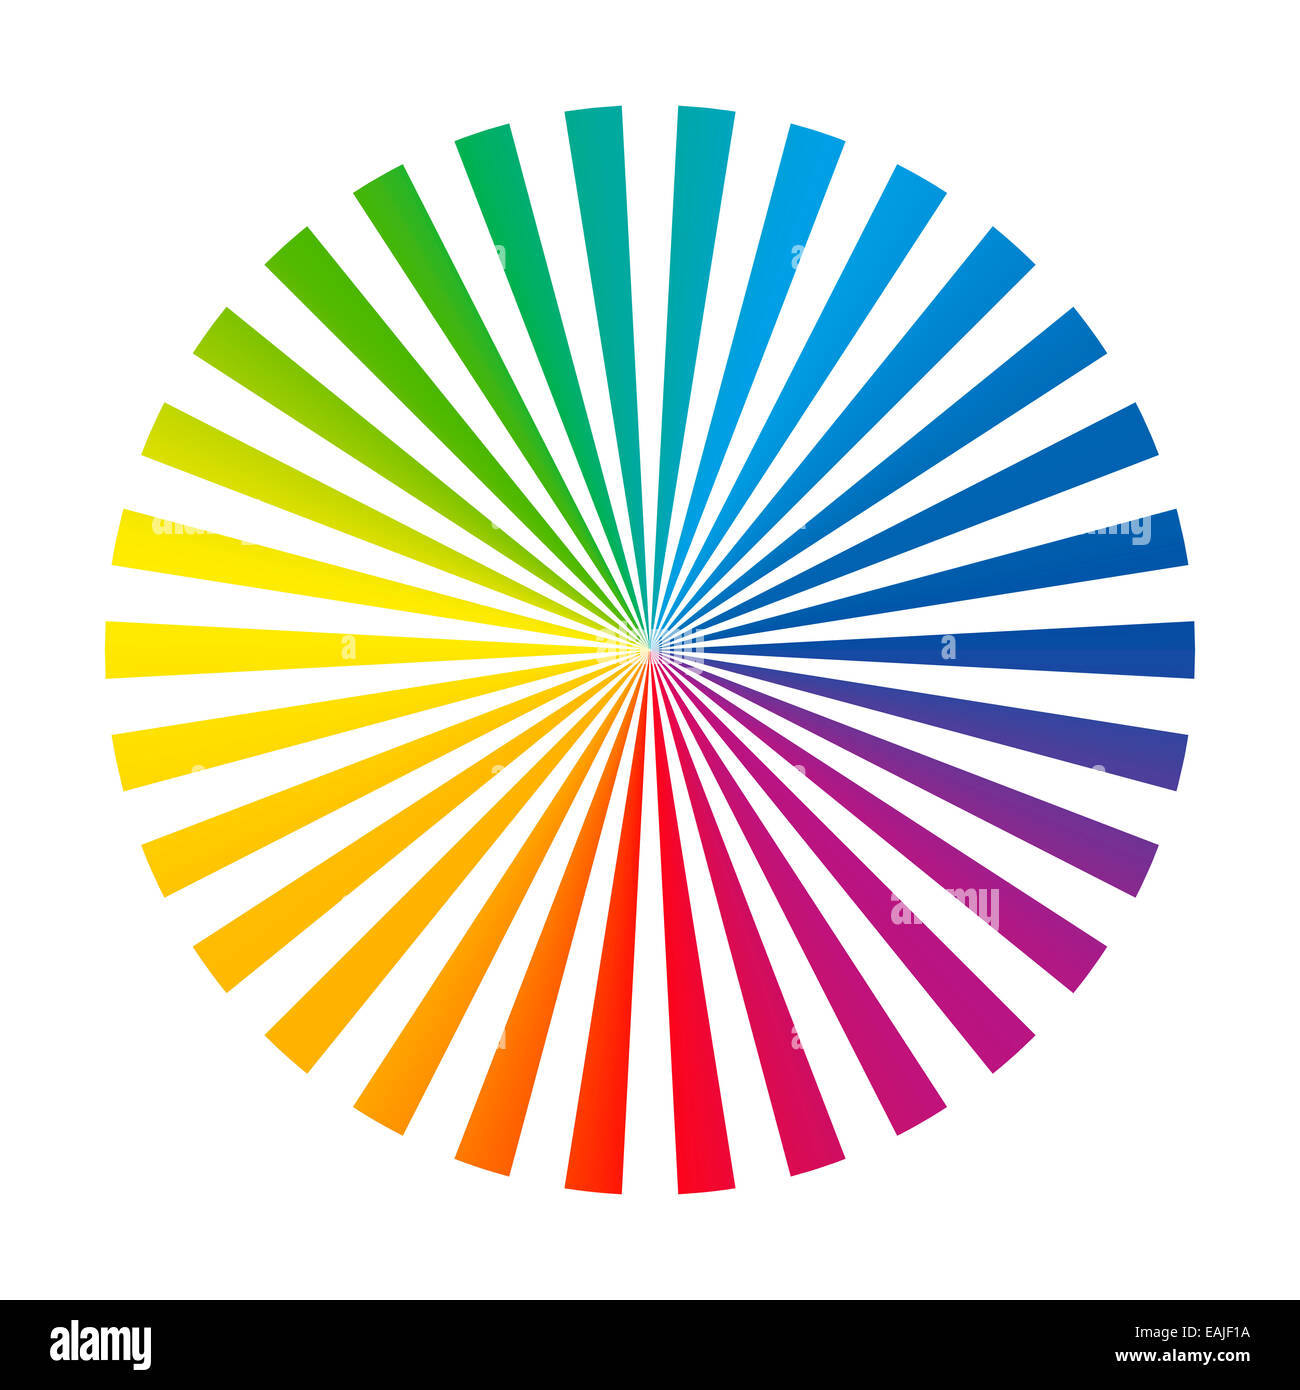 Circolare della ventola di colore mazzo composto da trenta diverse vivaci strisce di inchiostro. Foto Stock